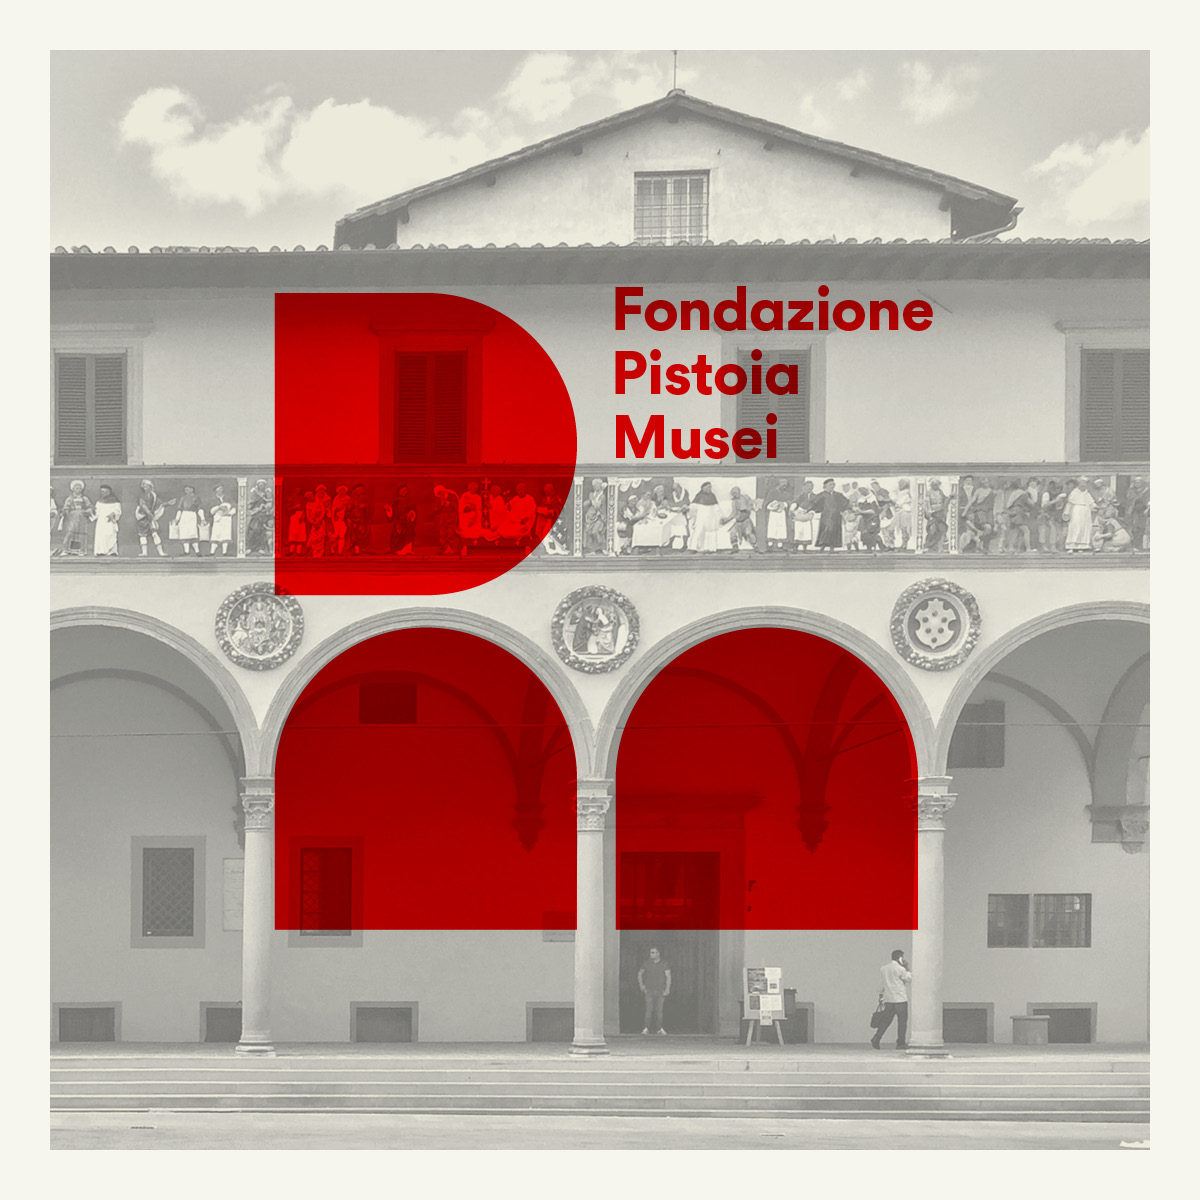 Fondazione-Pistoia-Musei-001 